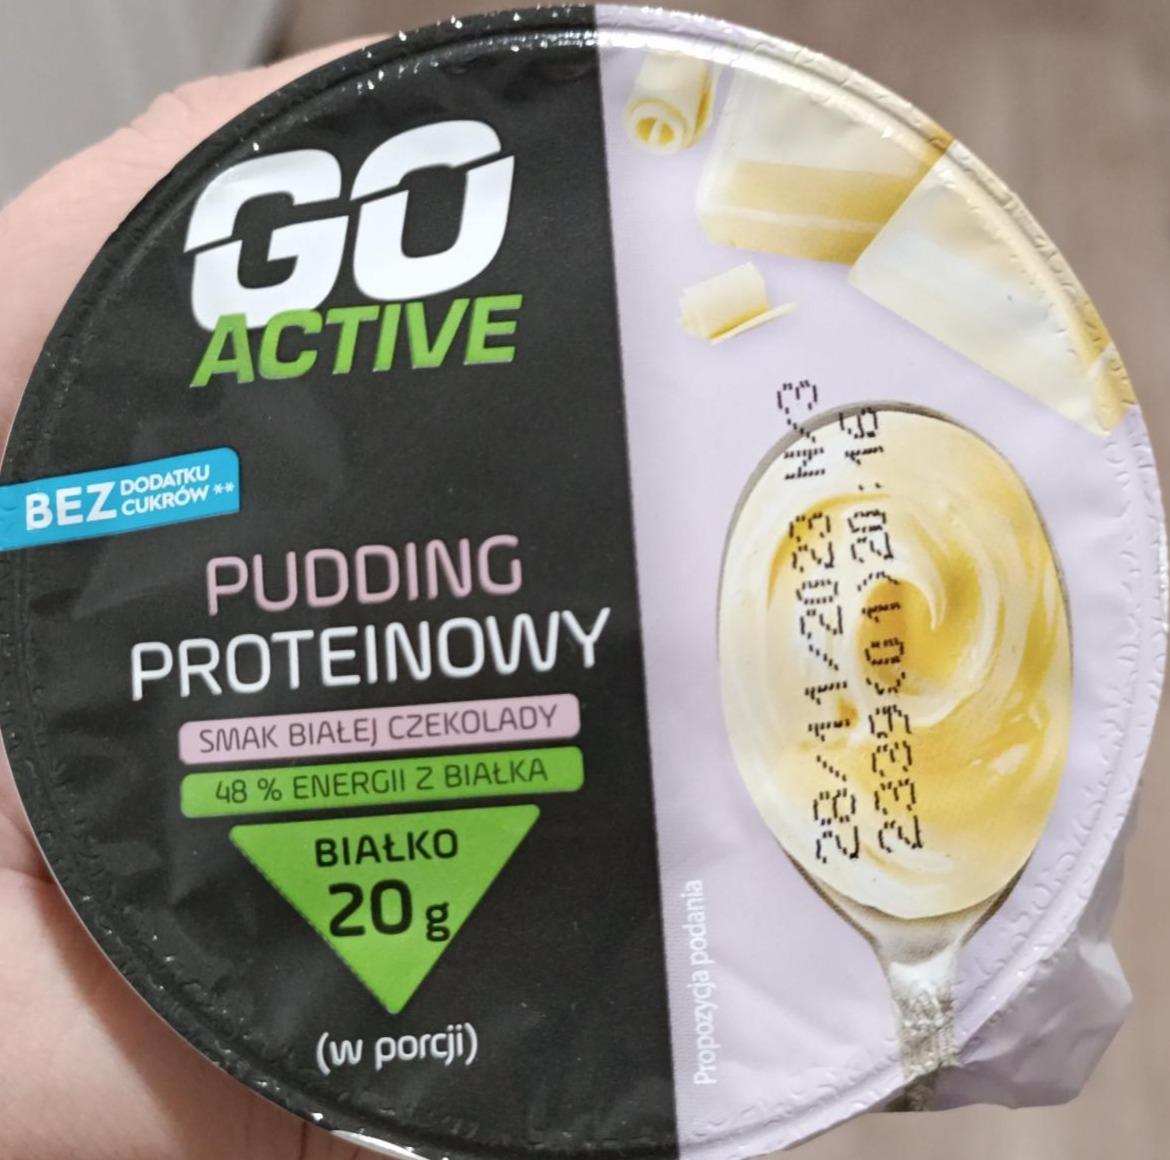 Zdjęcia - Pudding proteinowy smak białej czekolady Go active